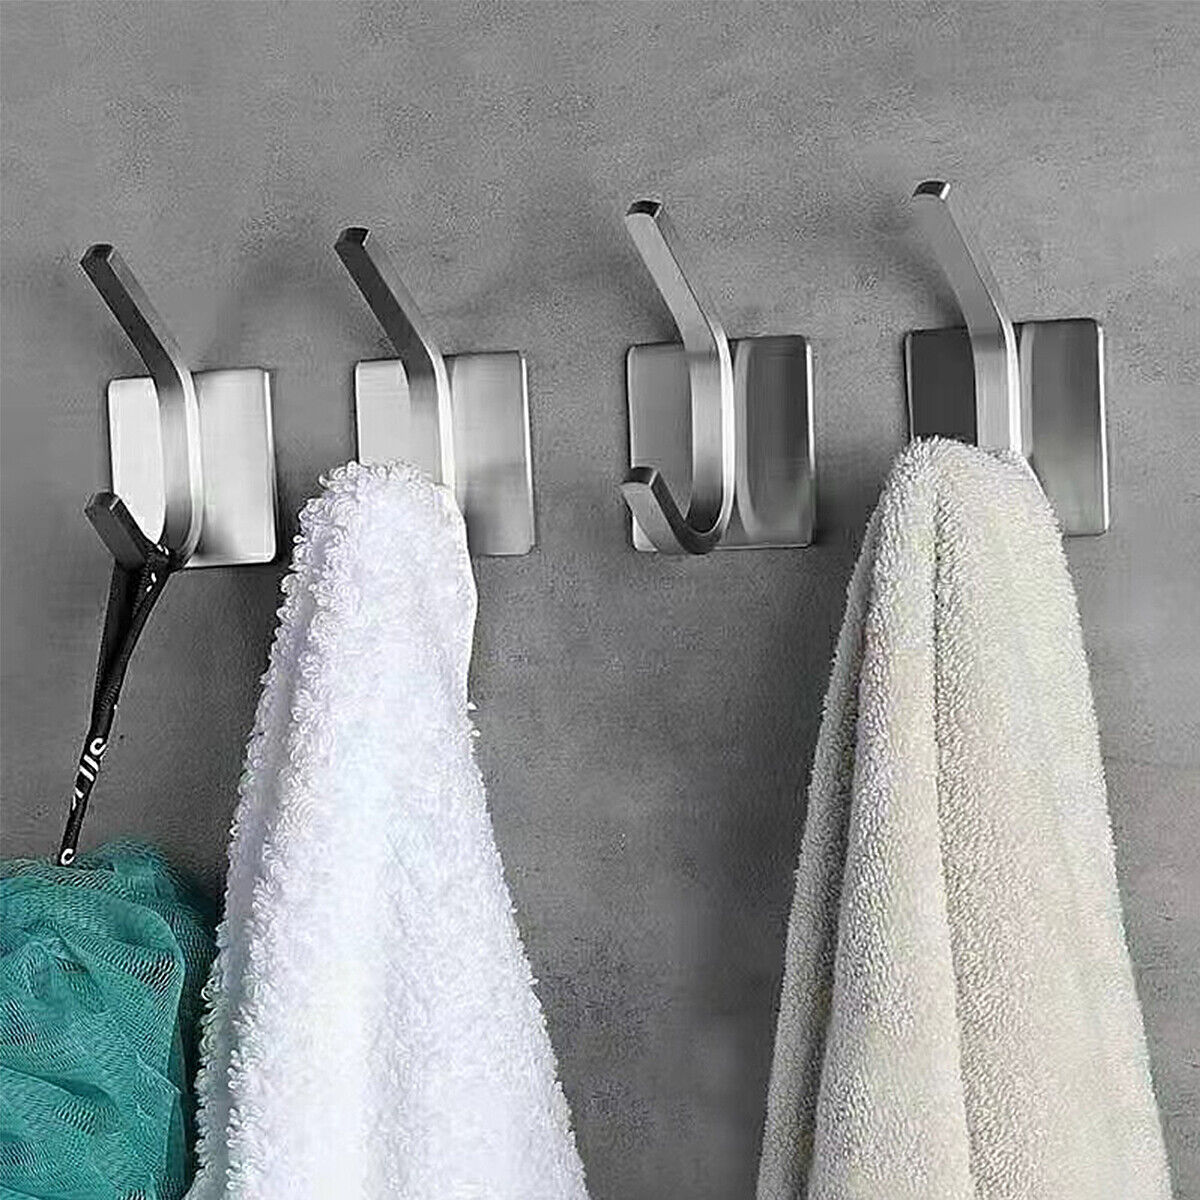 4pcs Clothing Hooks Metal Hook Towel Hook Holder Coat Wall Hooks Self  Adhesive Hooks Keys Hooks Wall Hooks for Hanging Hooks for Towels Stainless